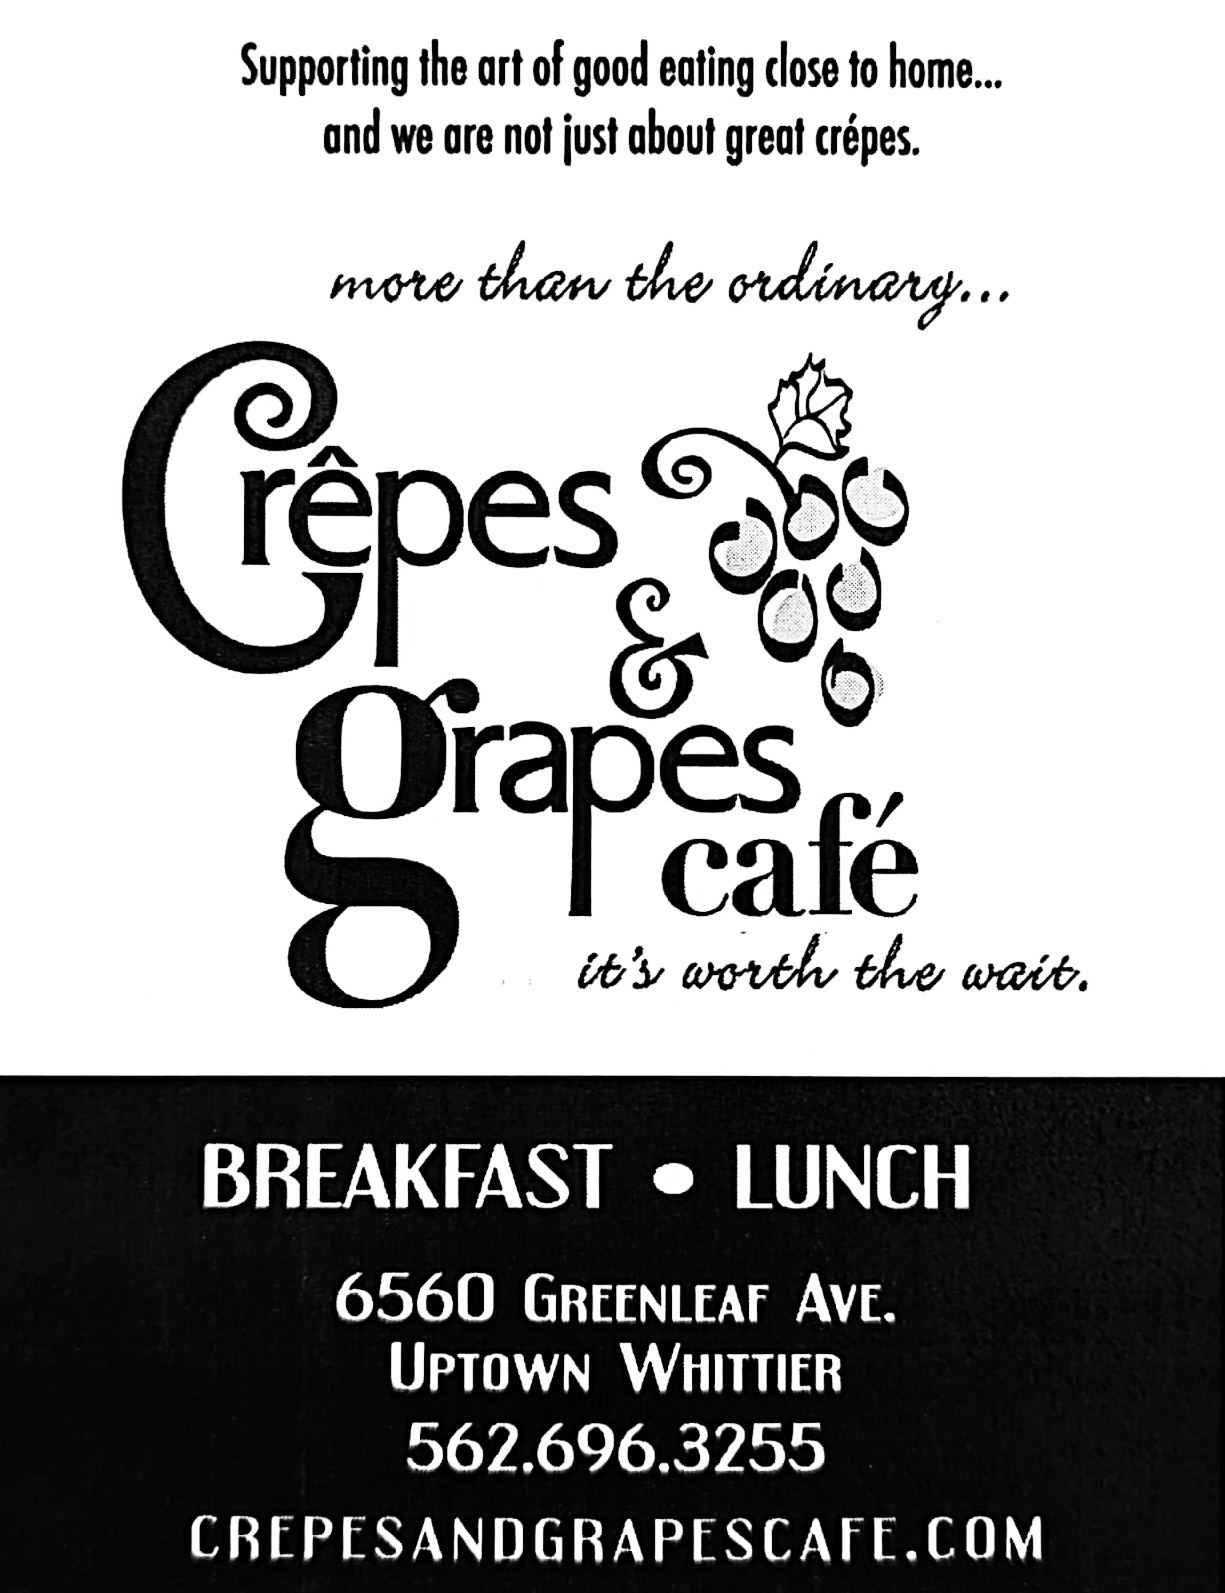 Crepes & Grapes